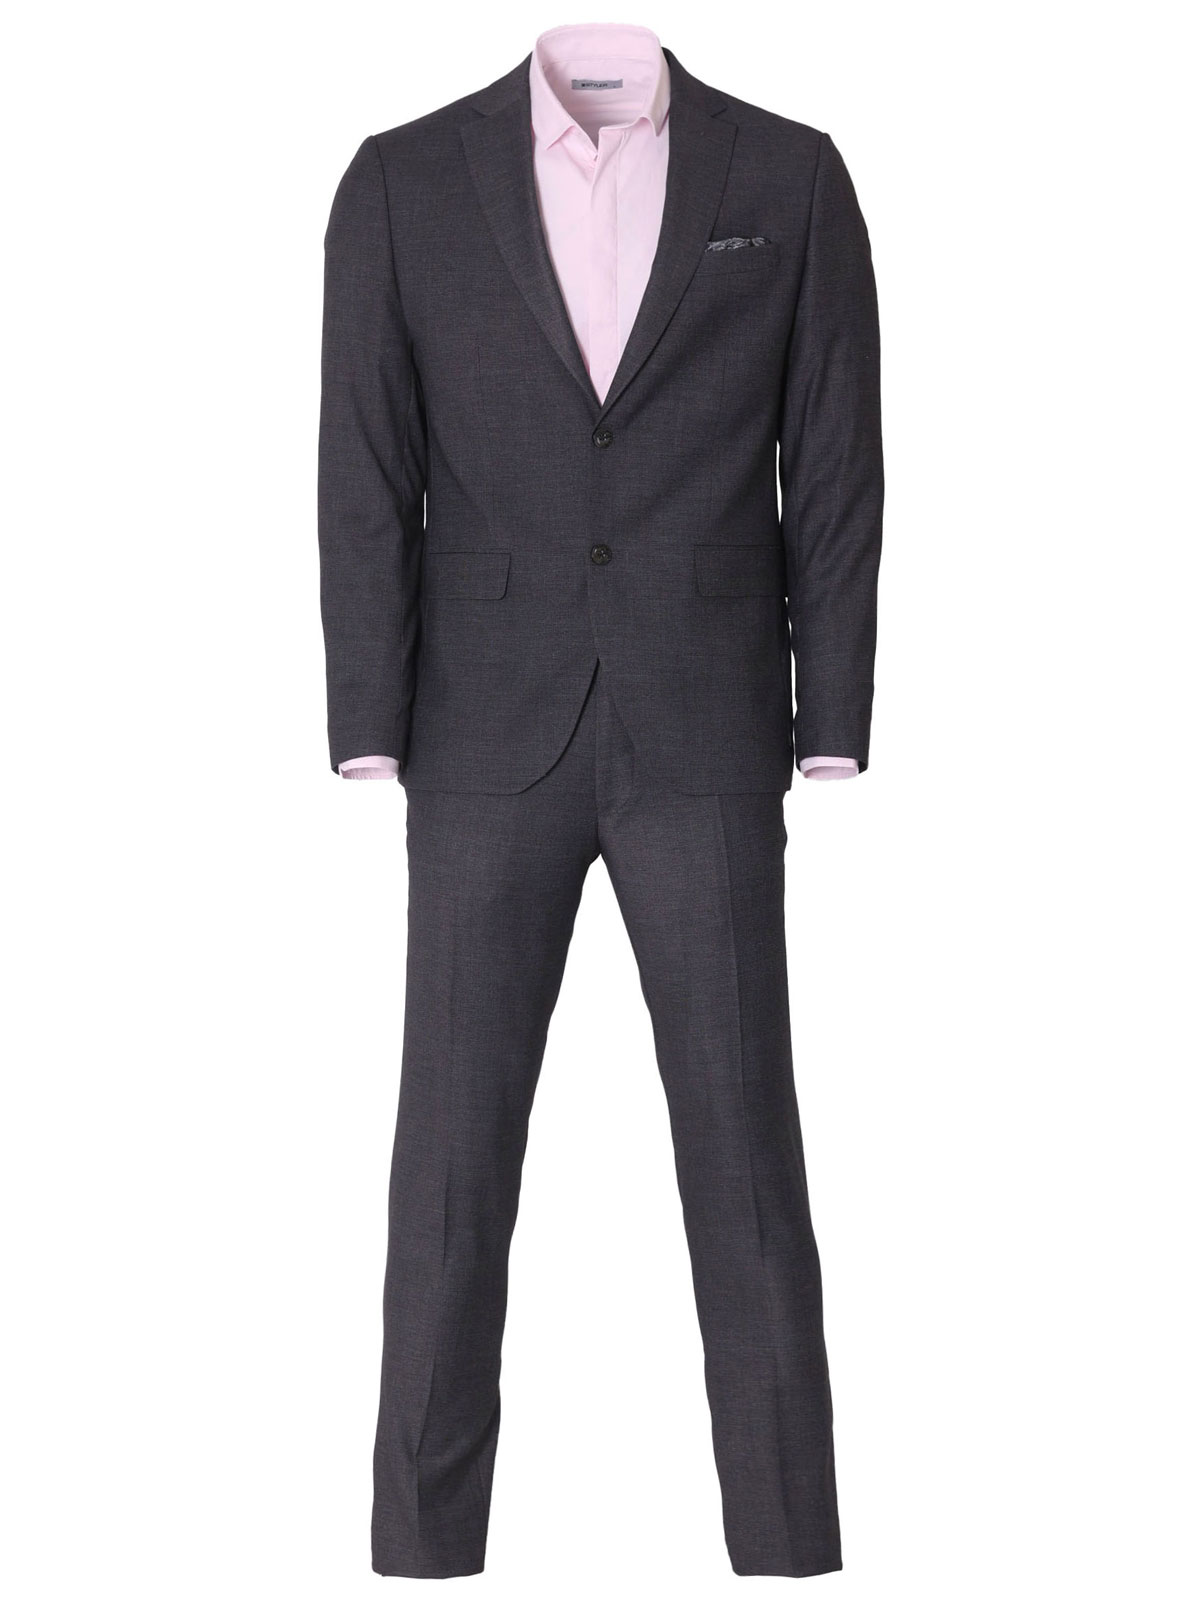 Κομψό ανδρικό κοστούμι σε γκρι χρώμα - 68076 € 212.60 img2